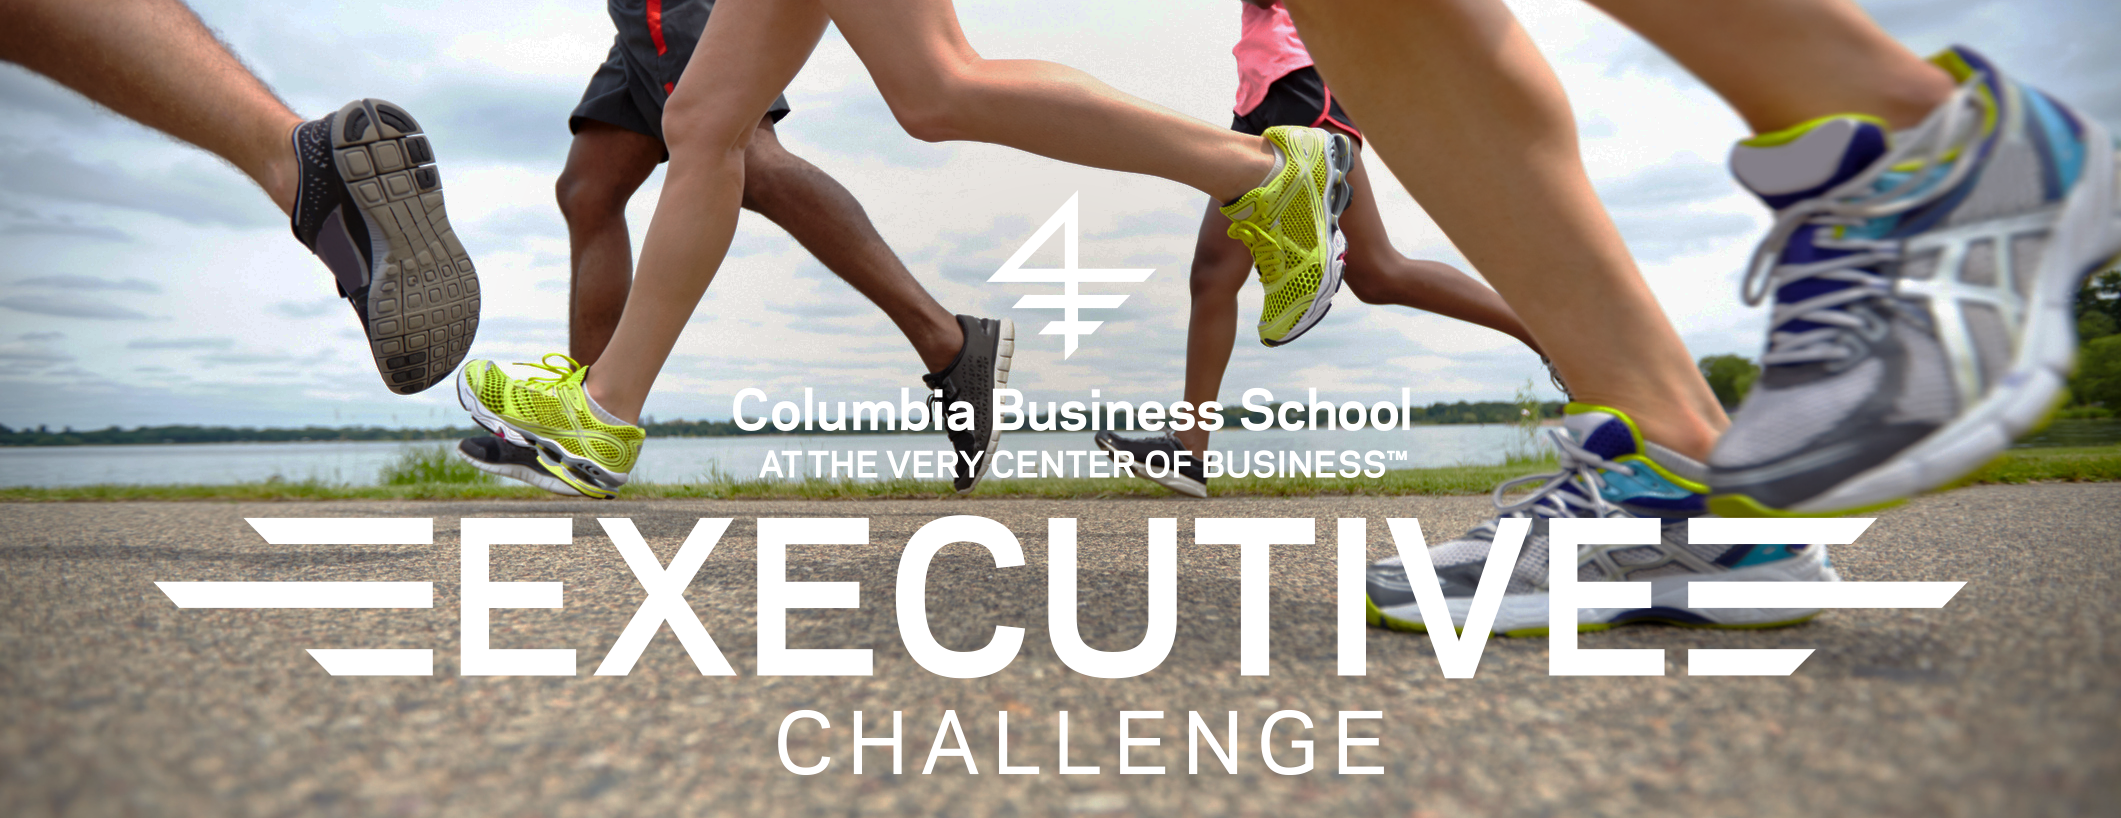 Executive Challenge